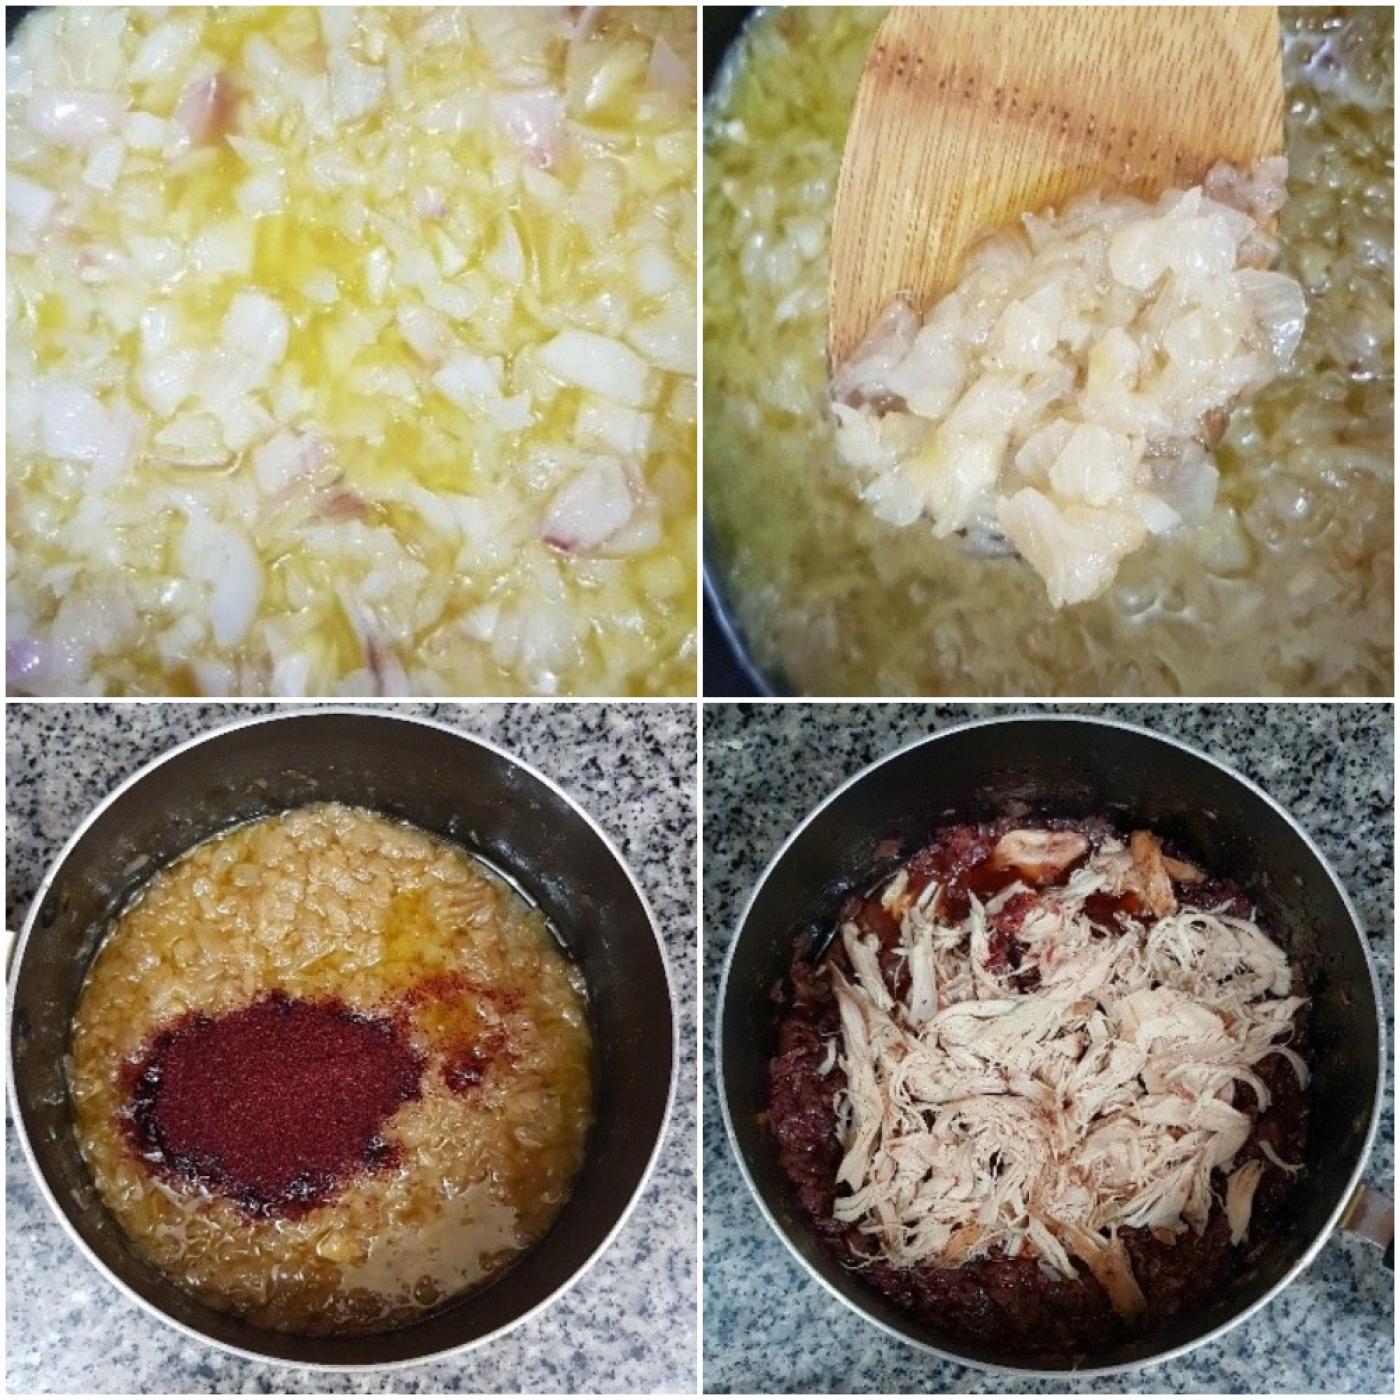 La magie du musakhan réside dans le mélange d’épices et l’effiloché de poulet (@ana__lina/Instagram)